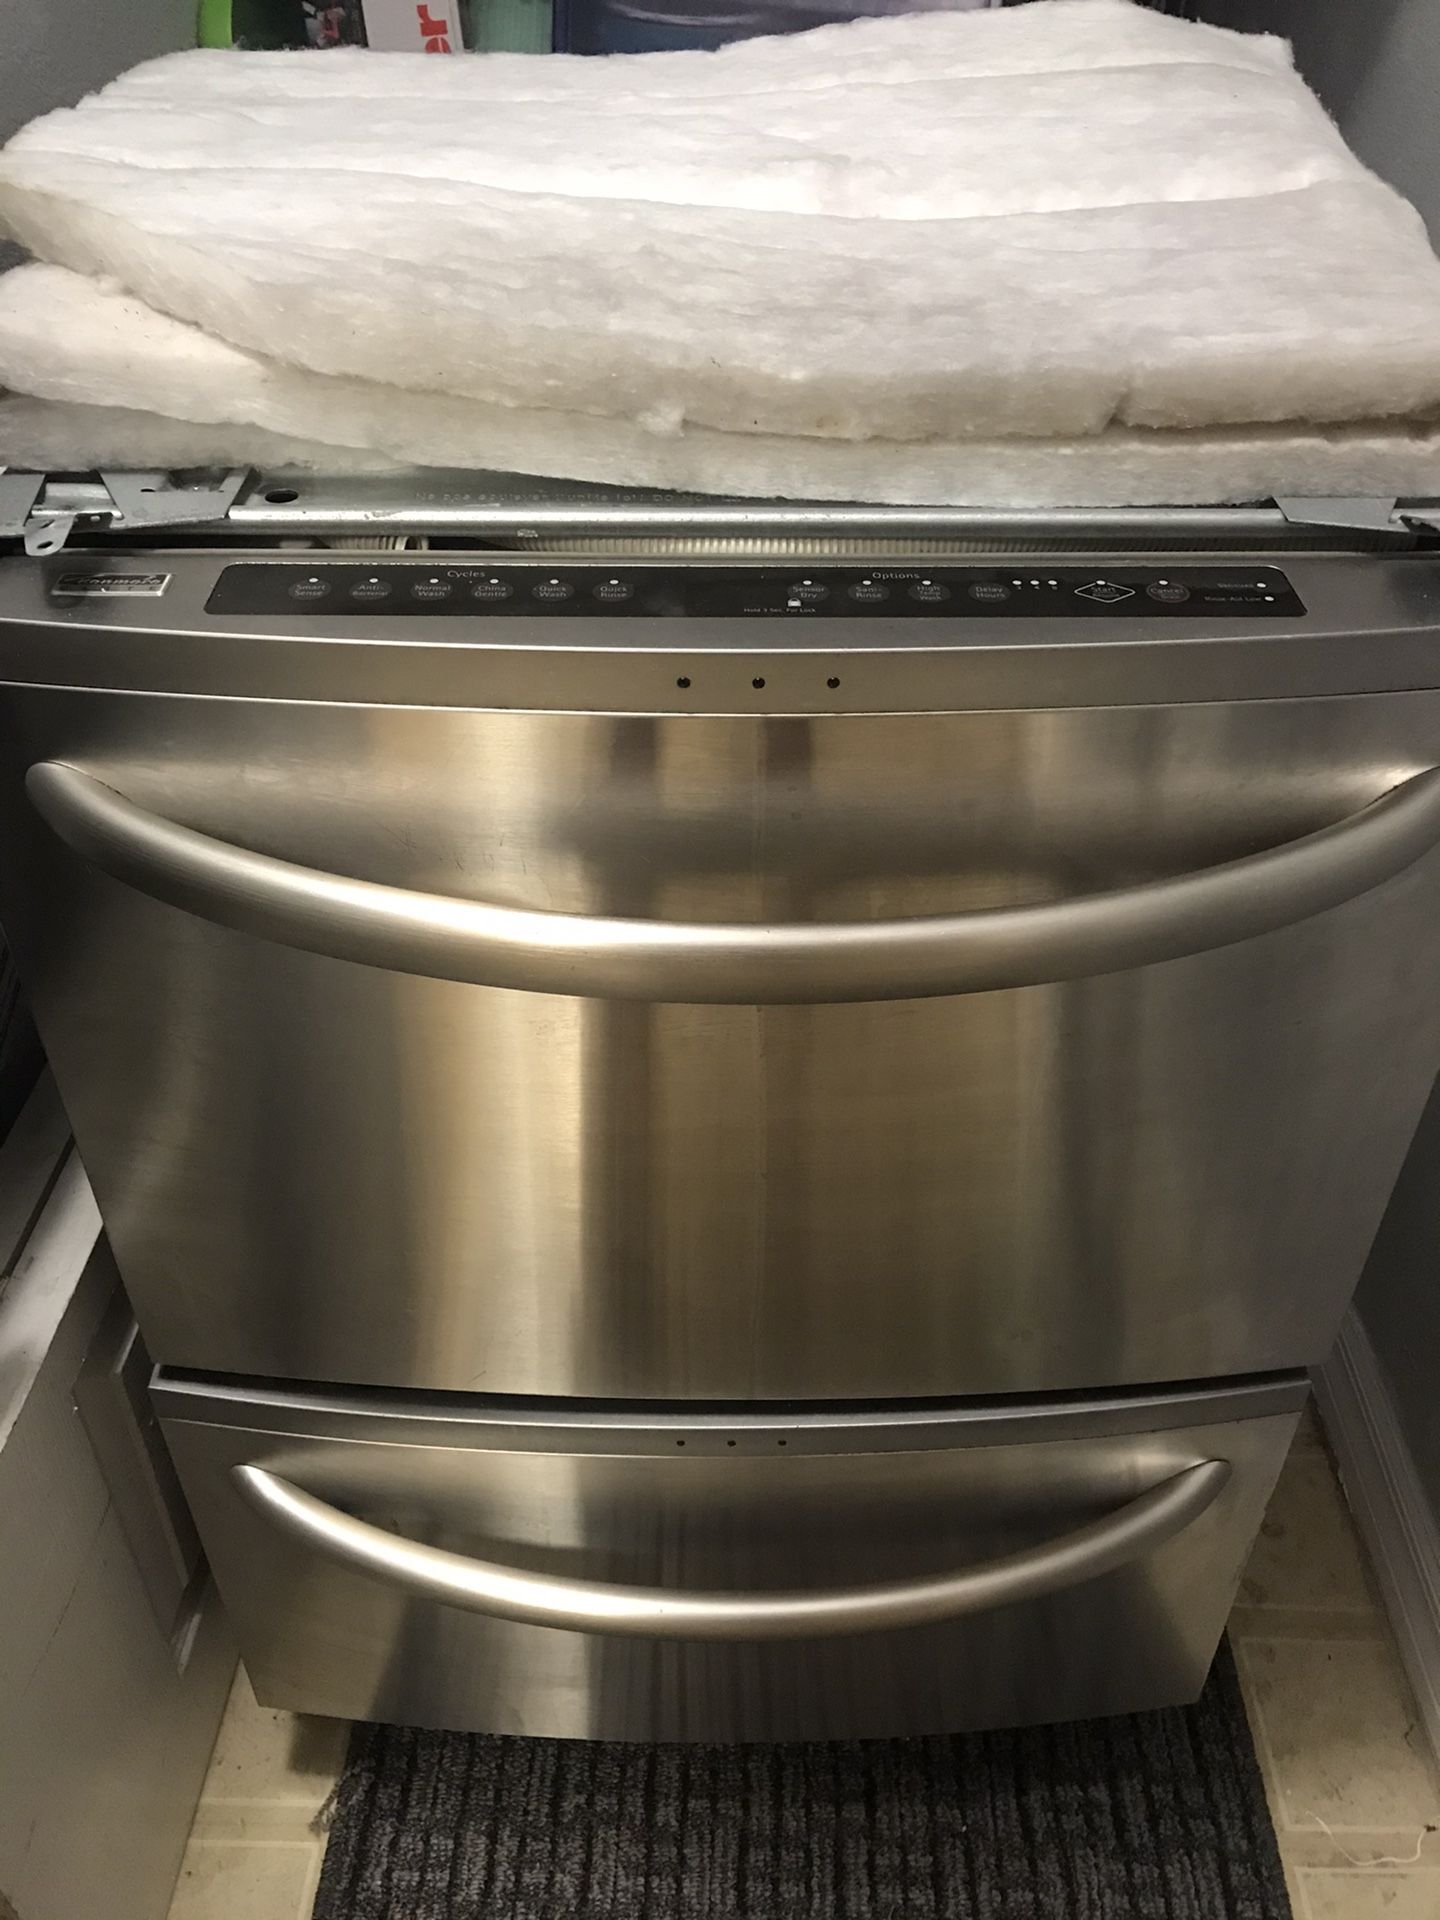 Kenmore Elite dual dish washer